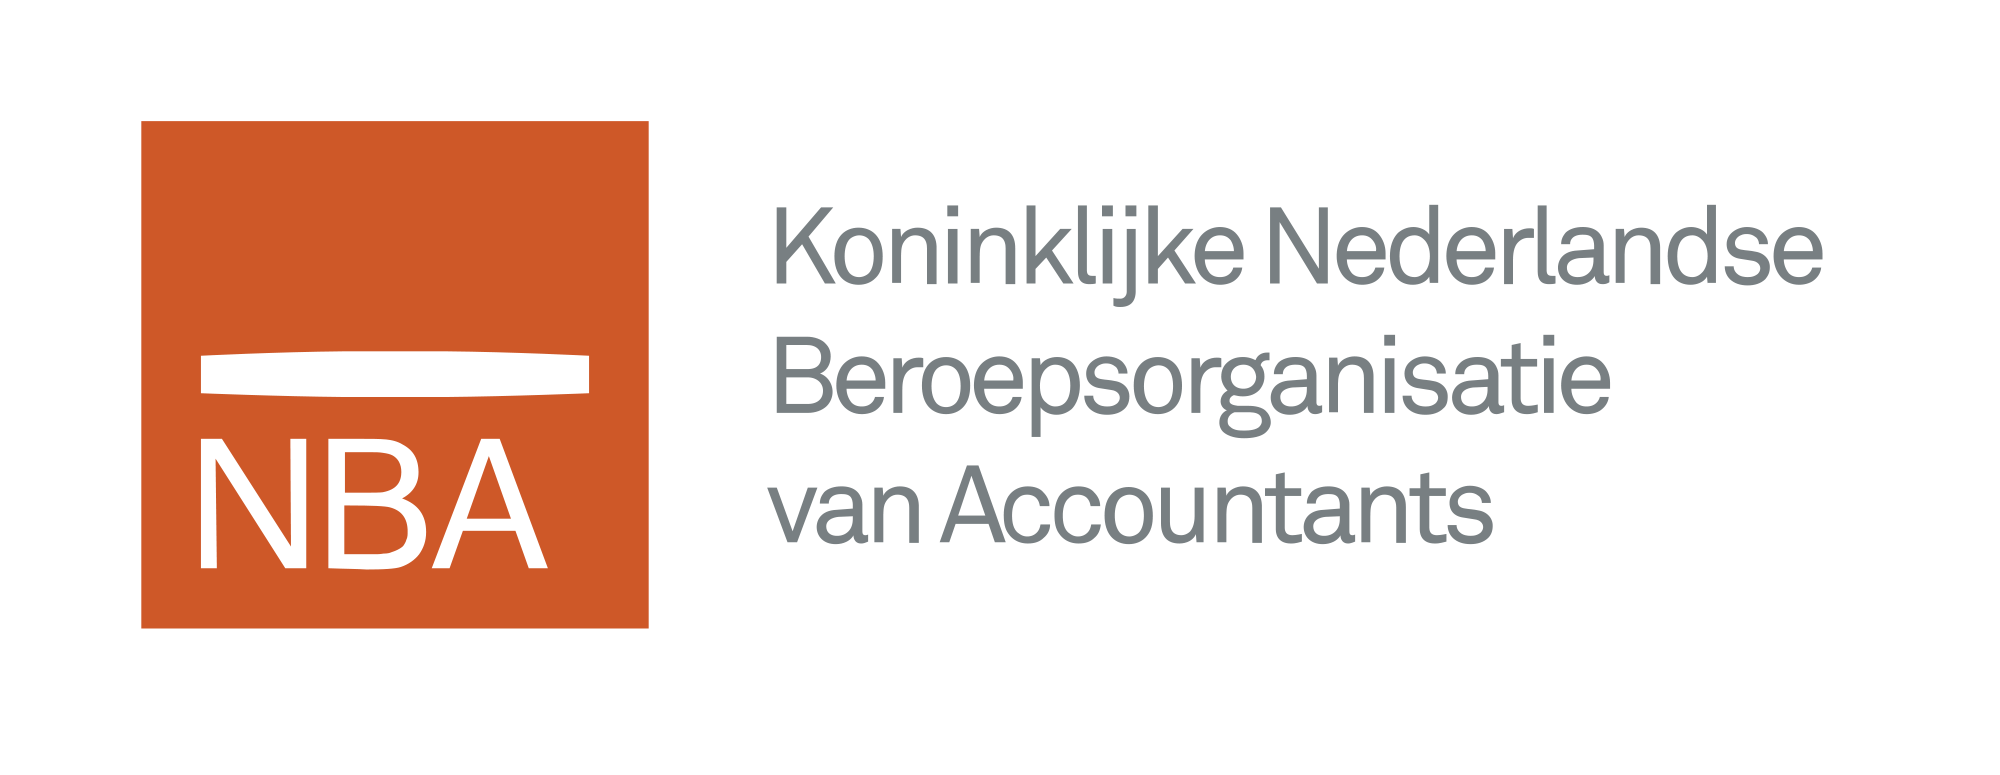 Logo Koninklijke Nederlandse Beroepsorganisatie van Accountants (NBA)